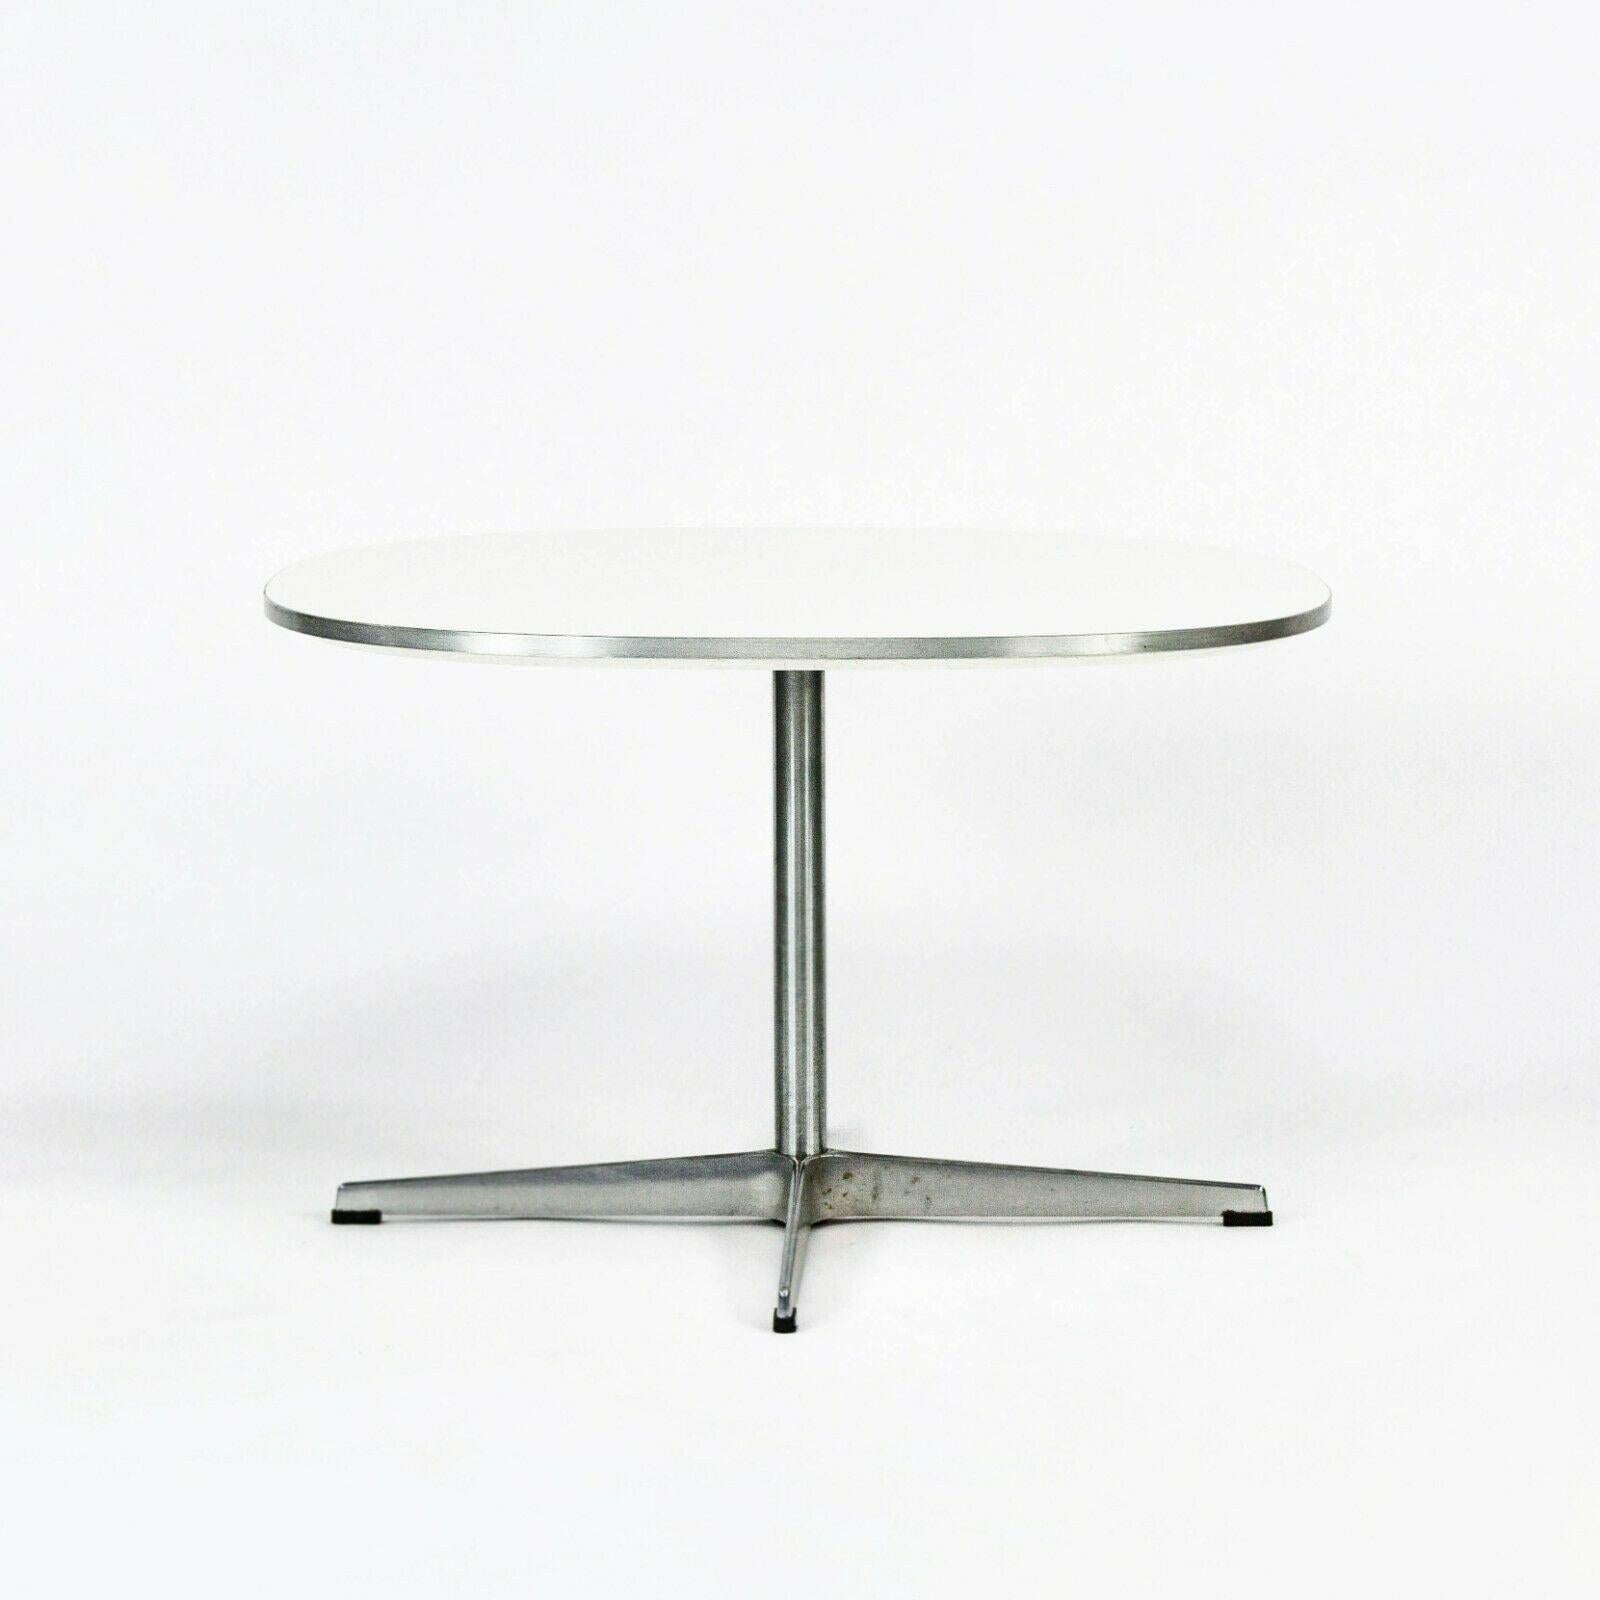 Nous proposons à la vente une table basse Superellipse (ou grande table d'appoint) de Piet Hein, Arne Jacobsen et Bruno Mathsson pour Fritz Hansen, produite en 2004. Ce modèle a été présenté pour la première fois en 1968 et faisait partie d'une